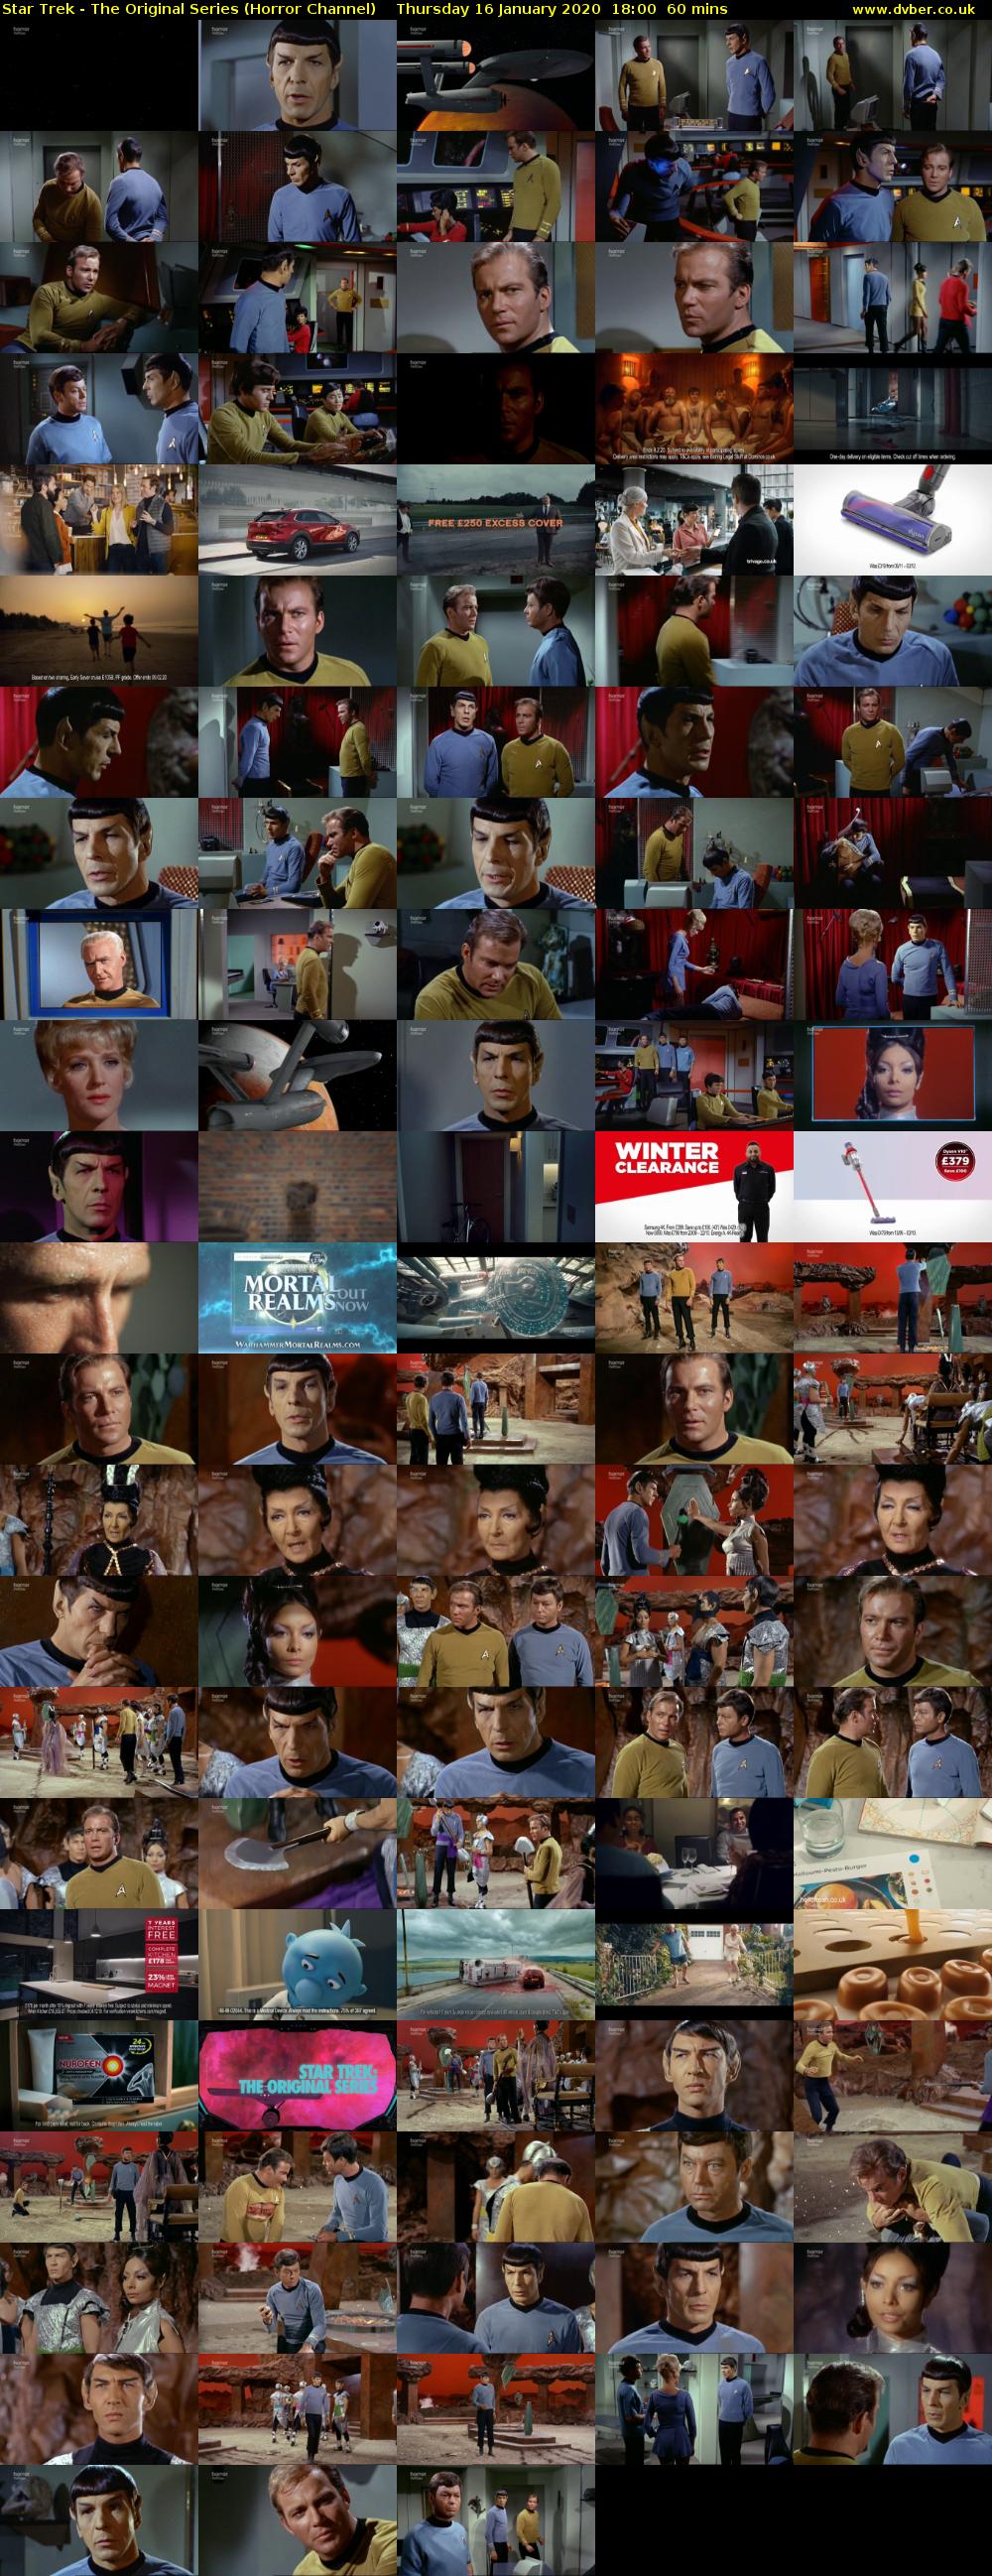 Star Trek - The Original Series (Horror Channel) Thursday 16 January 2020 18:00 - 19:00